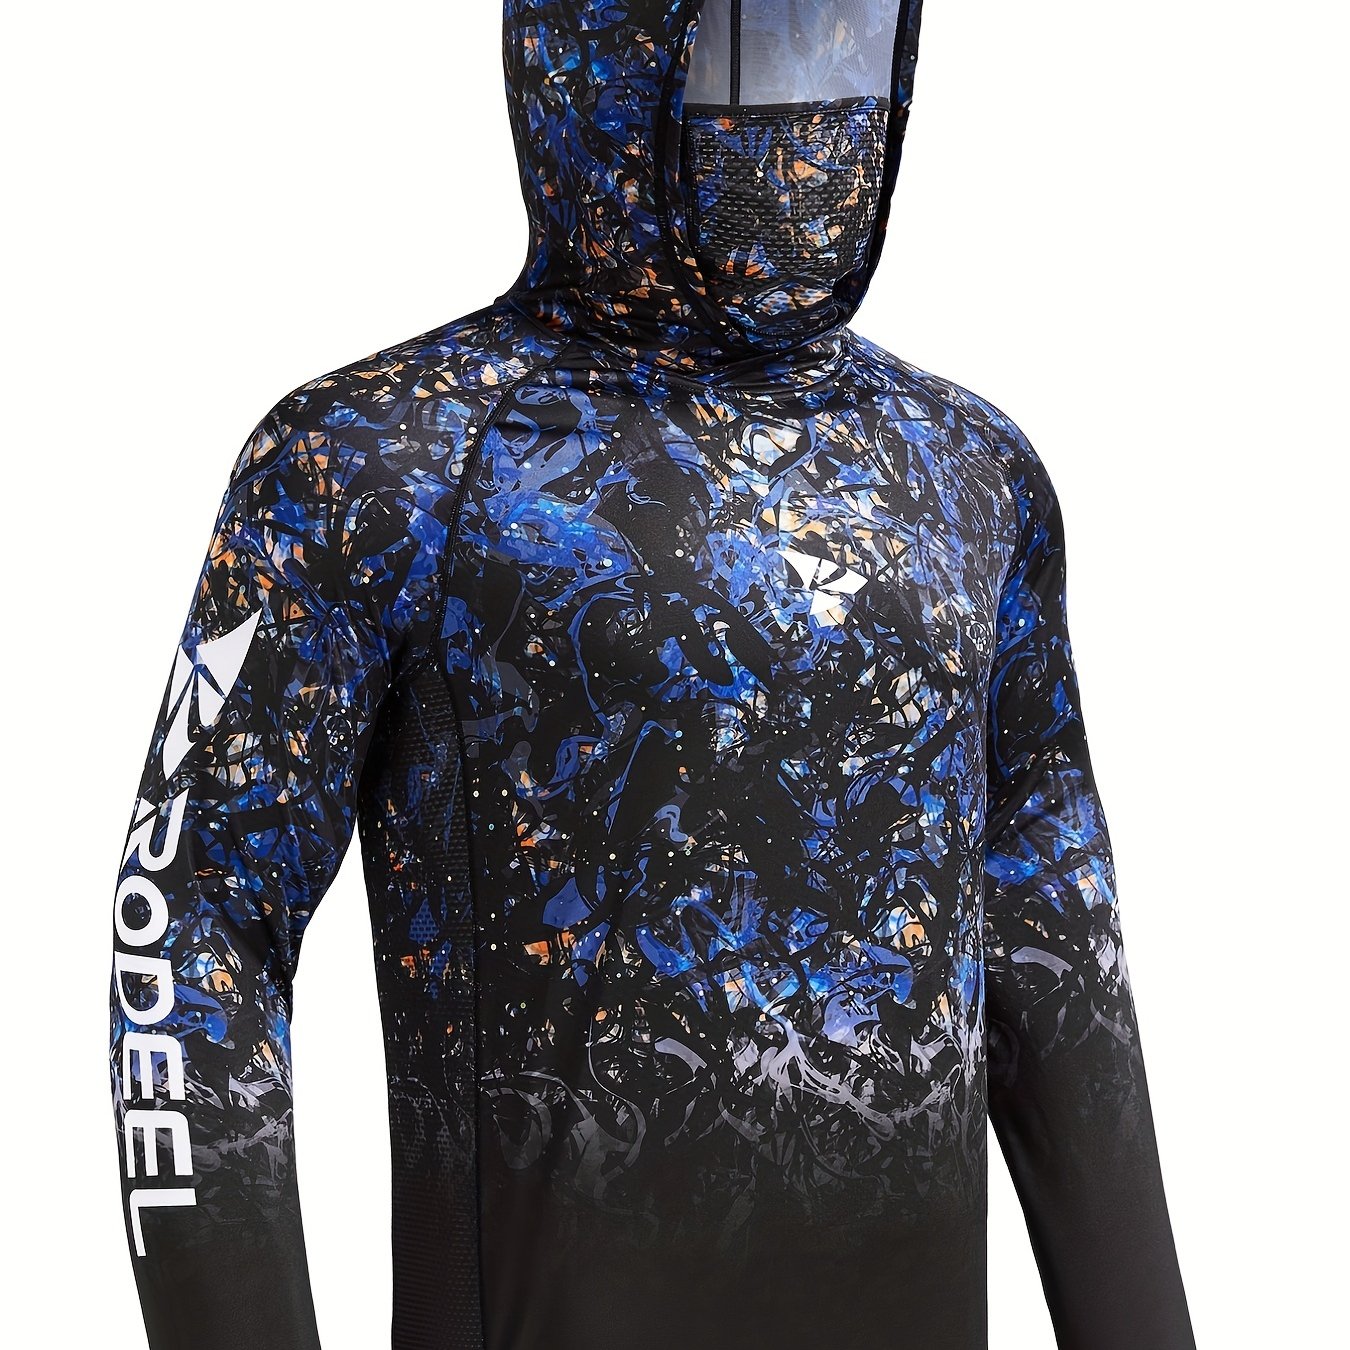 Αγορά AliExpress  Pelagic Fishing Shirt Upf 50 Fish Hoodies Cap UV  Protection Long Sleeve Jersey Camisa Pesca Angeln Bekleidung Angling Tops  Gear